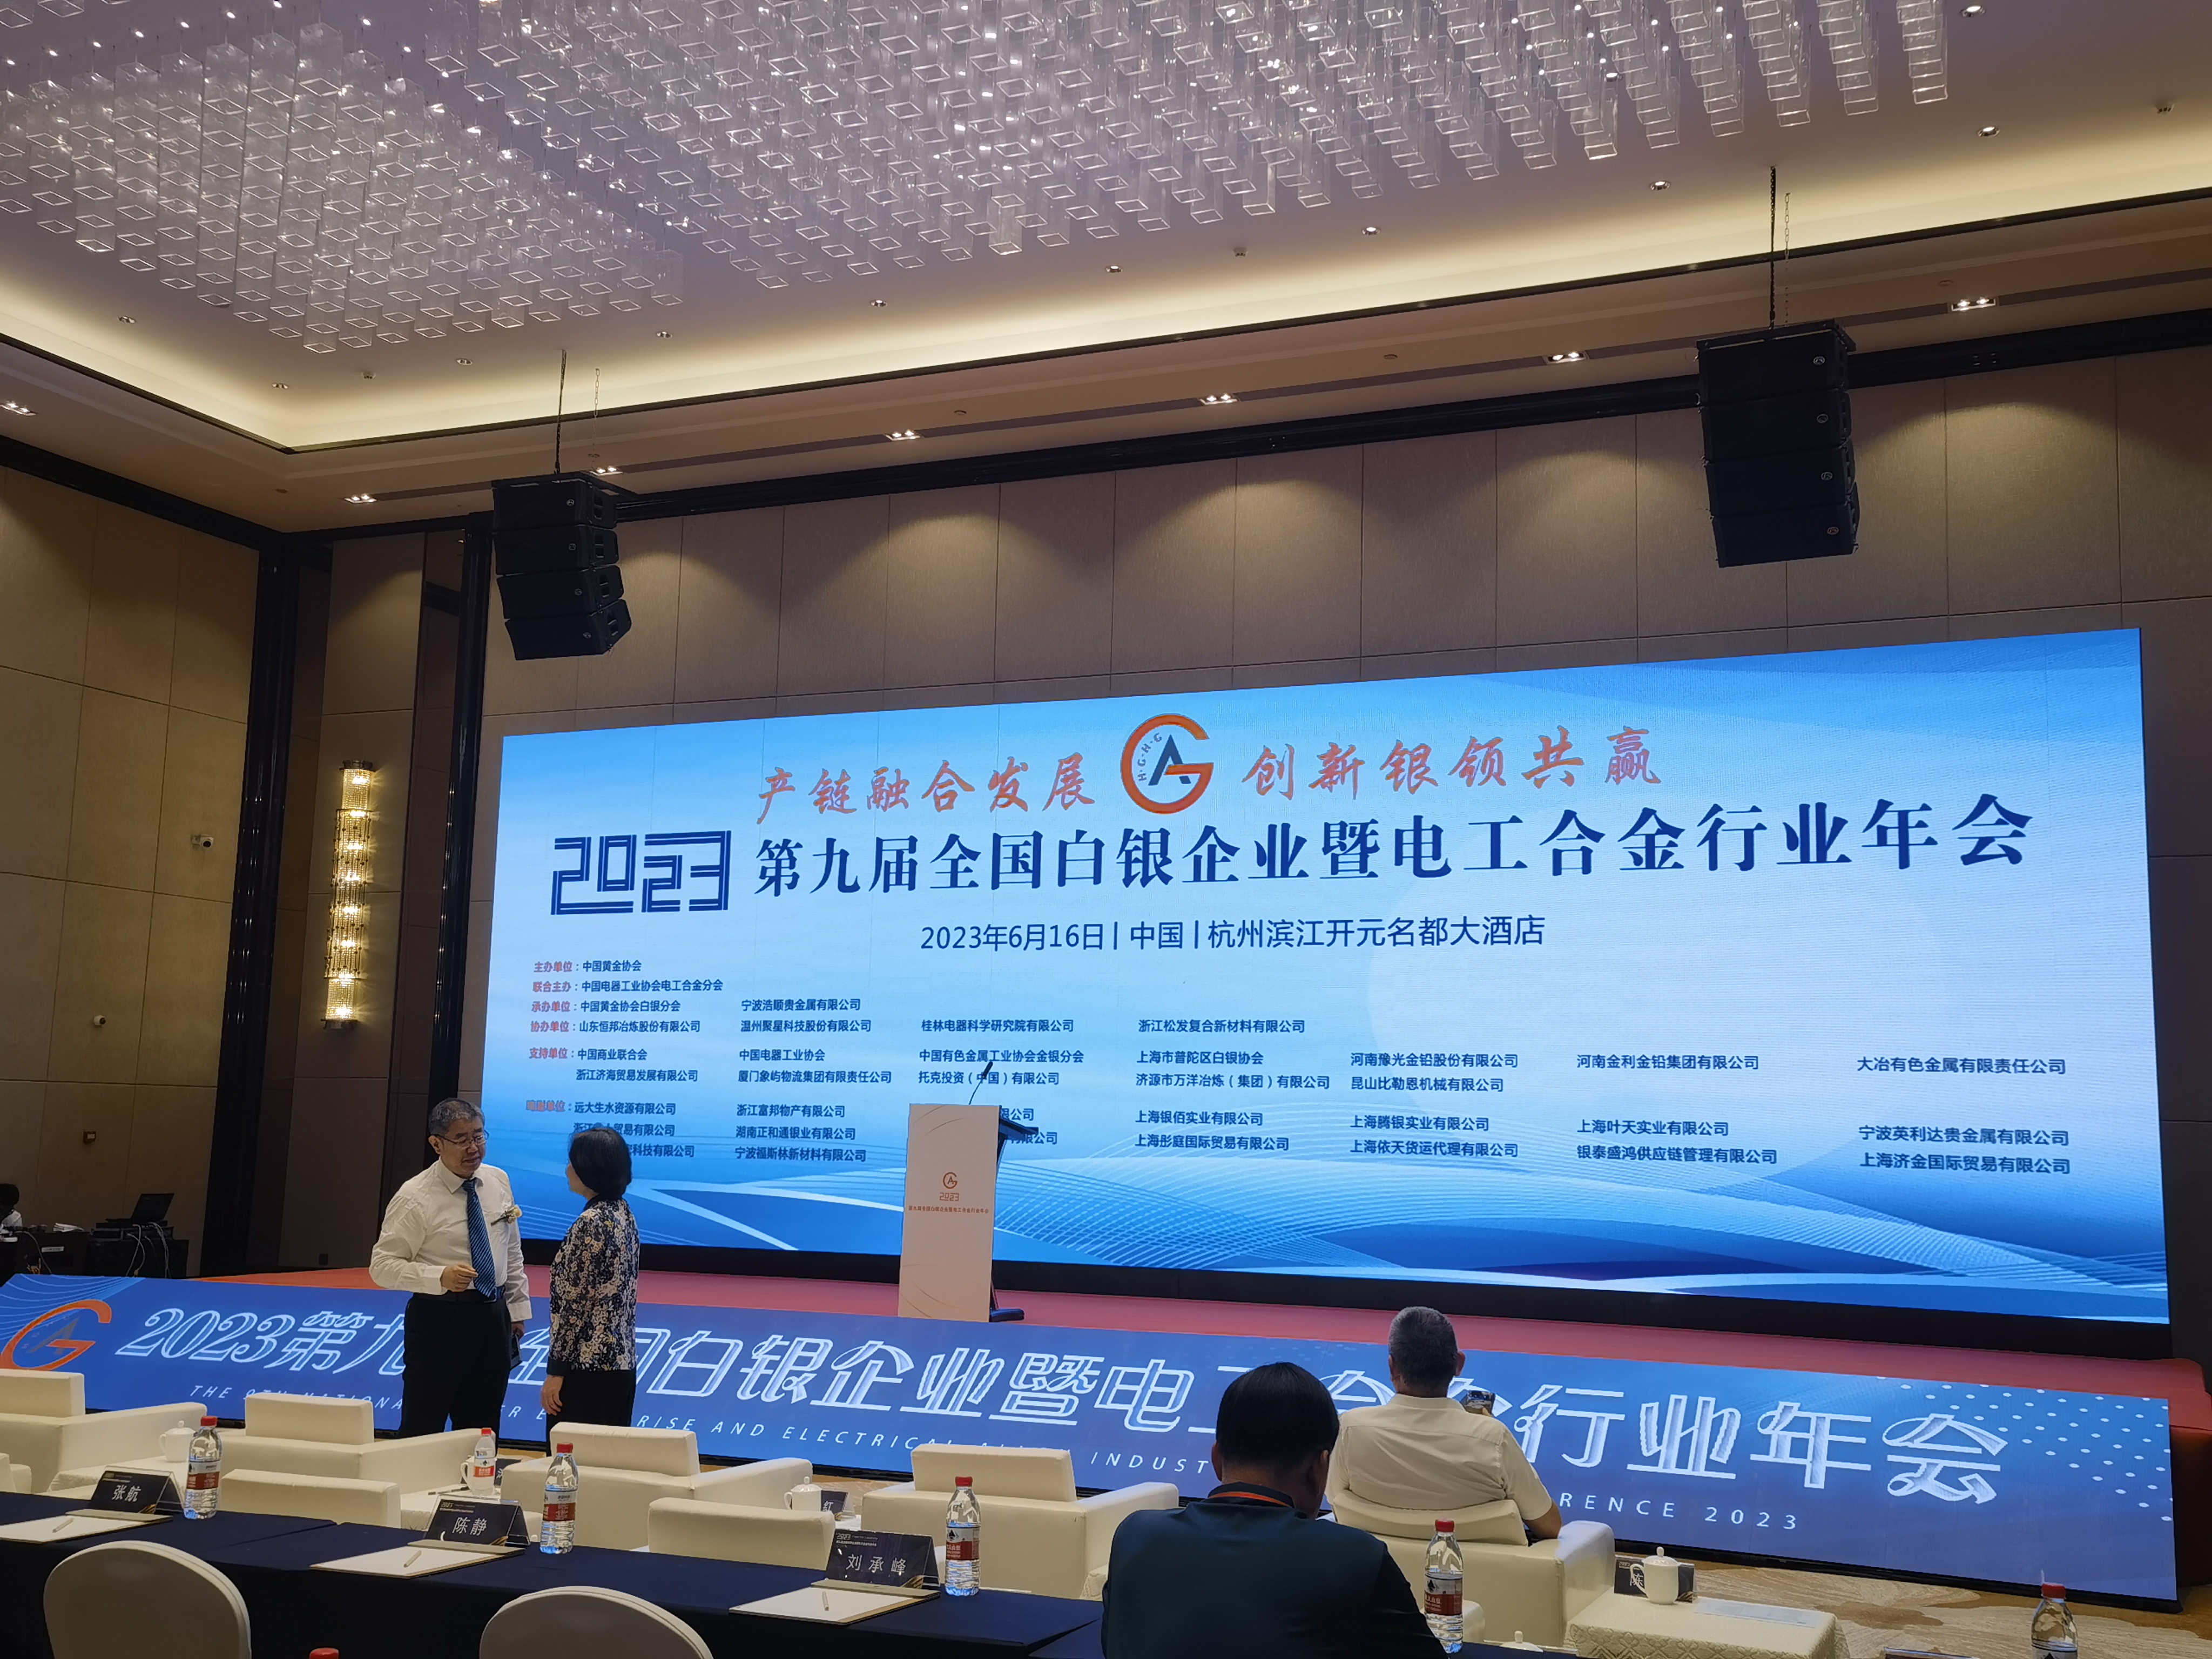 Չինաստանի արծաթի և էլեկտրական համաձուլվածքների արդյունաբերության 9-րդ համաժողովը